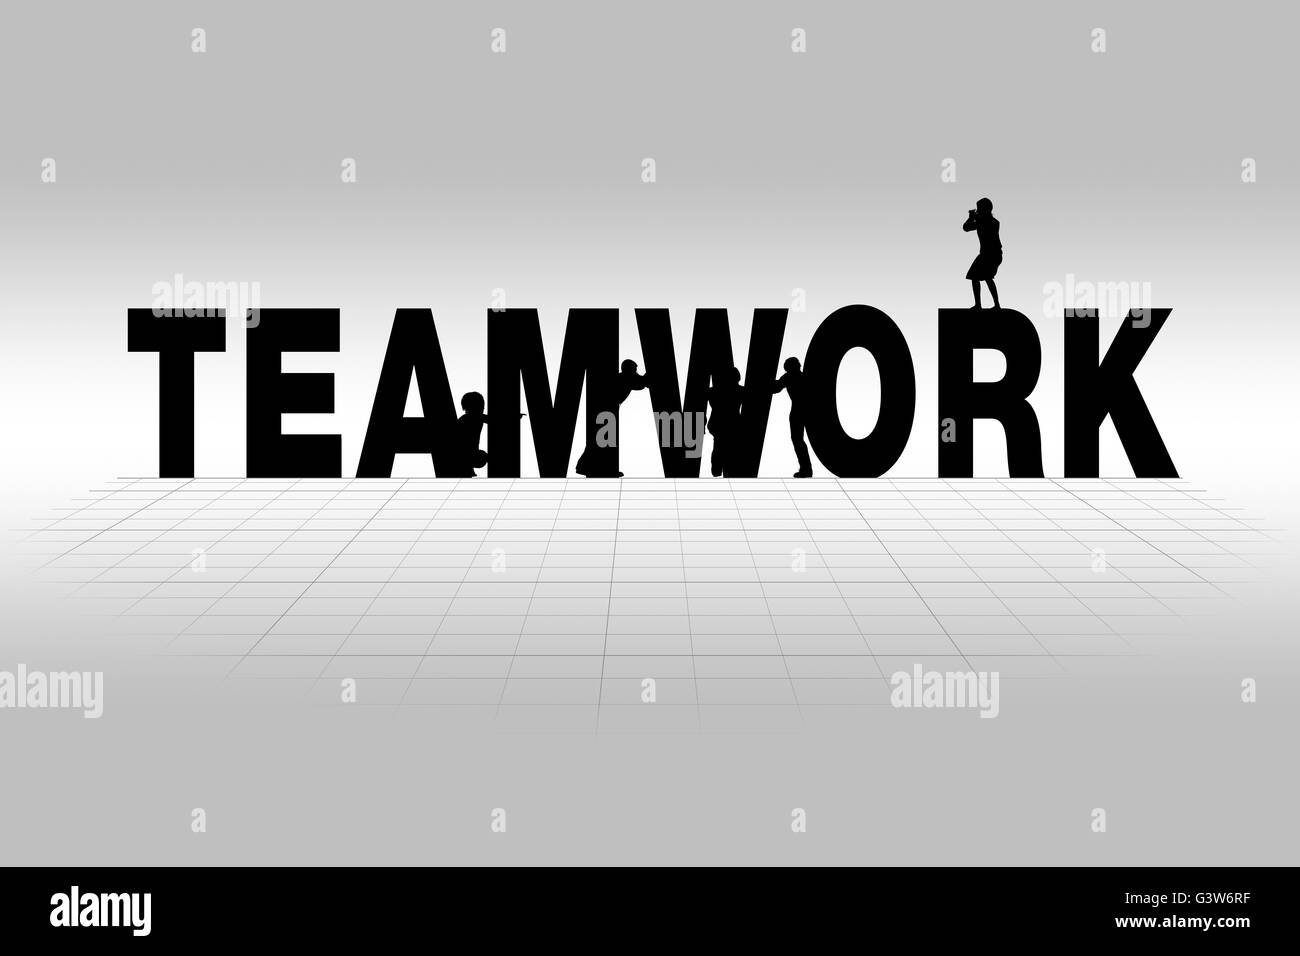 Teamarbeit-Wort Kommunikation Geschäftskonzept der Teamarbeit in der Silhouette. Stockfoto